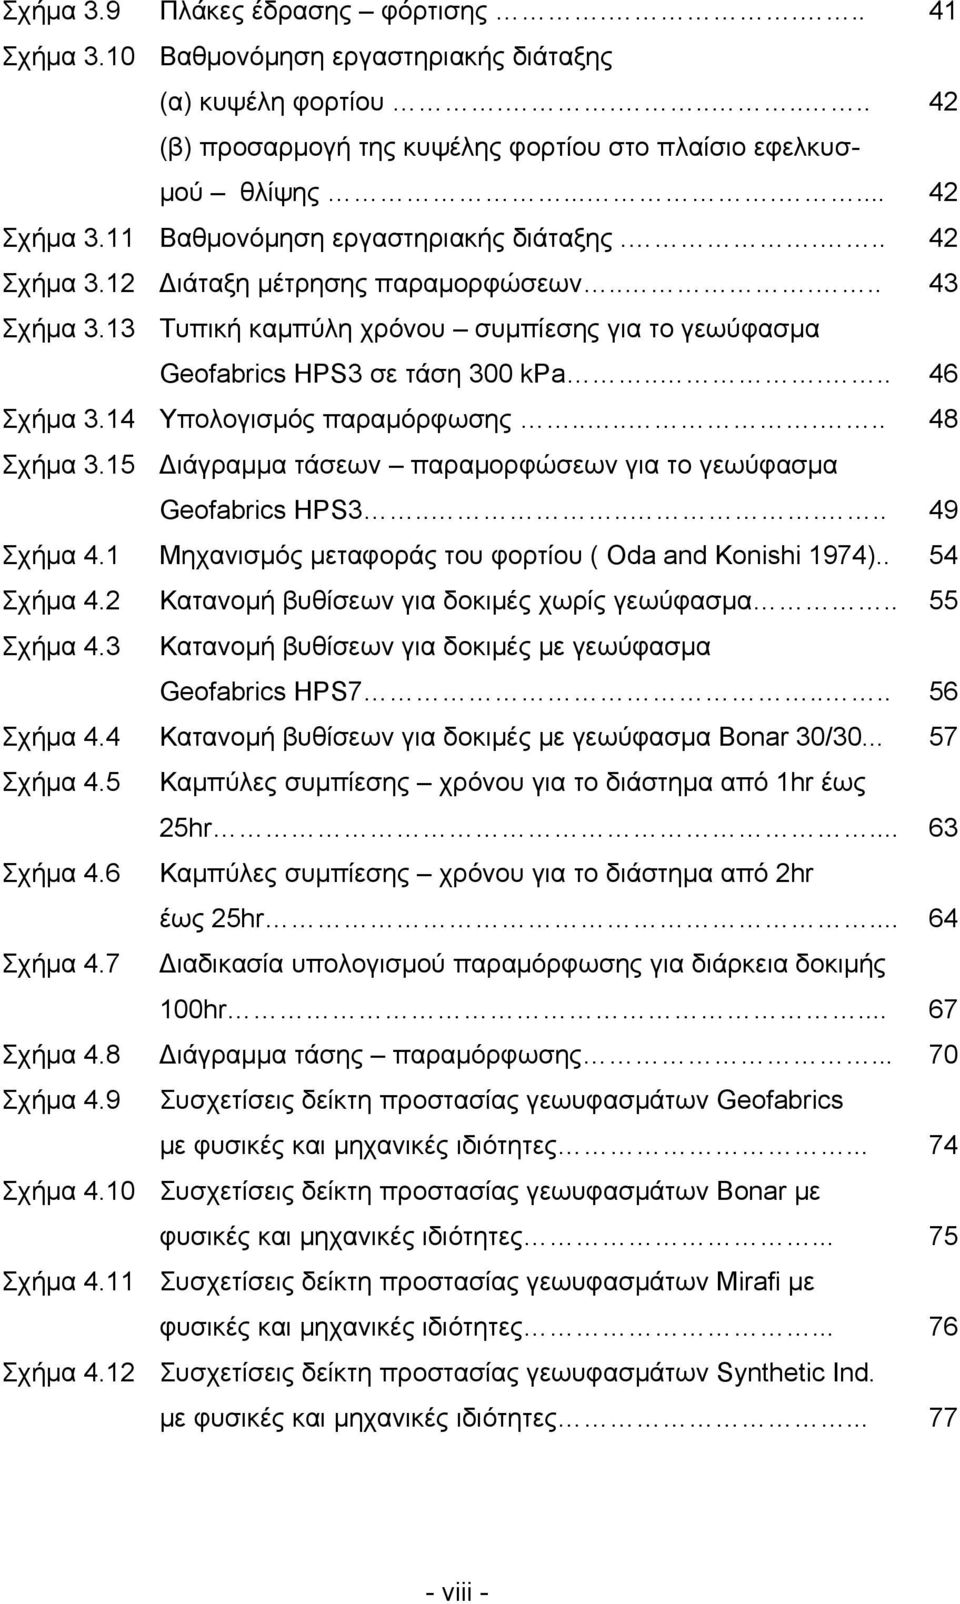 14 Υπολογισμός παραμόρφωσης....... 48 Σχήμα 3.15 Διάγραμμα τάσεων παραμορφώσεων για το γεωύφασμα Geofabrics HPS3....... 49 Σχήμα 4.1 Μηχανισμός μεταφοράς του φορτίου ( Oda and Konishi 1974).